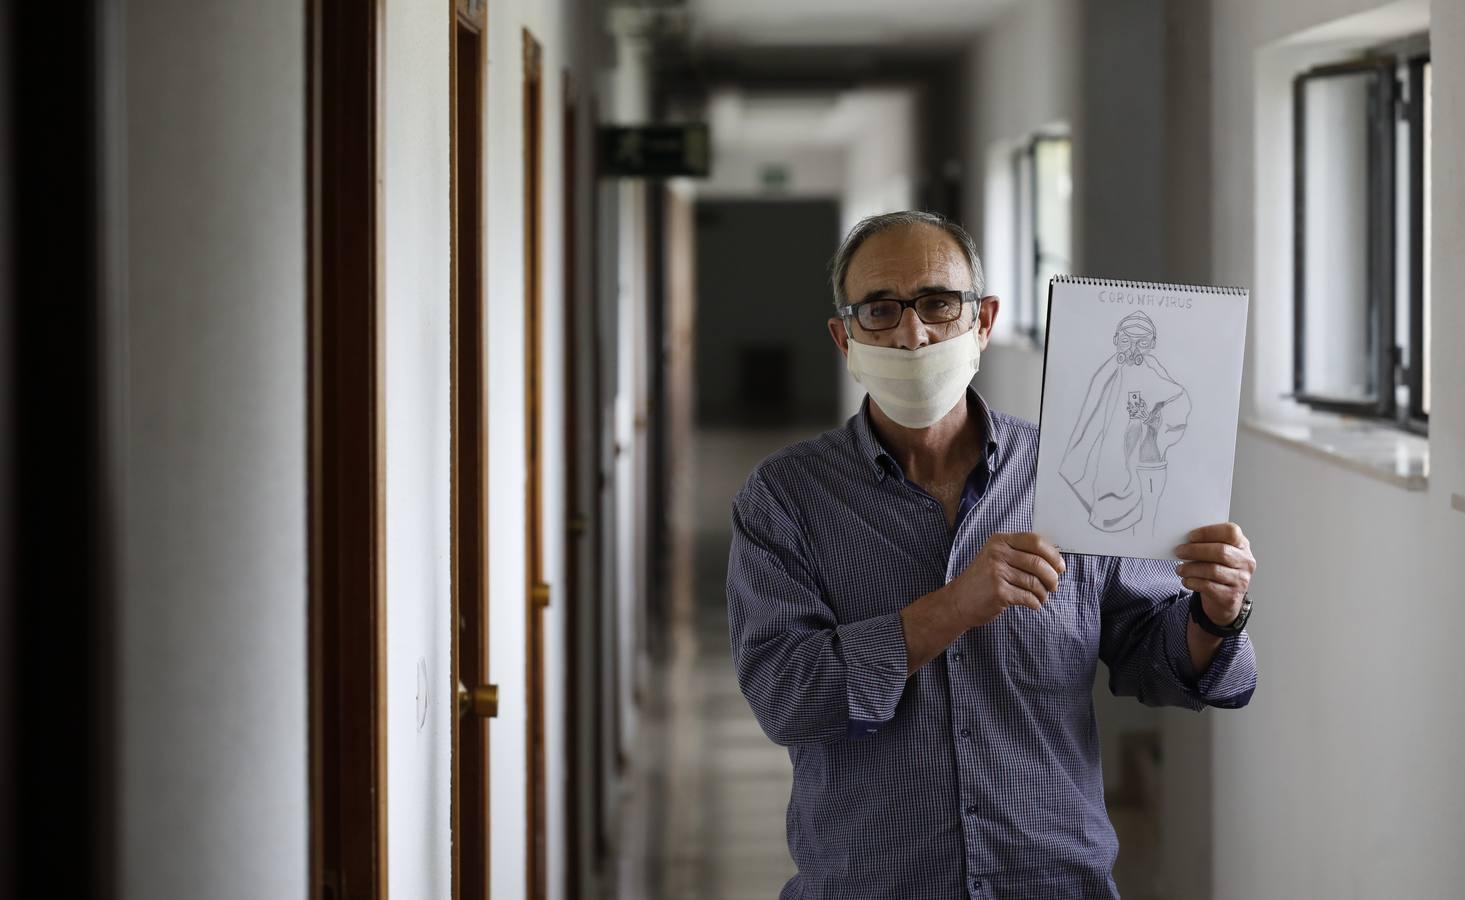 La vida confinada por coronavirus en el Colegio Séneca de Córdoba para los sin techo